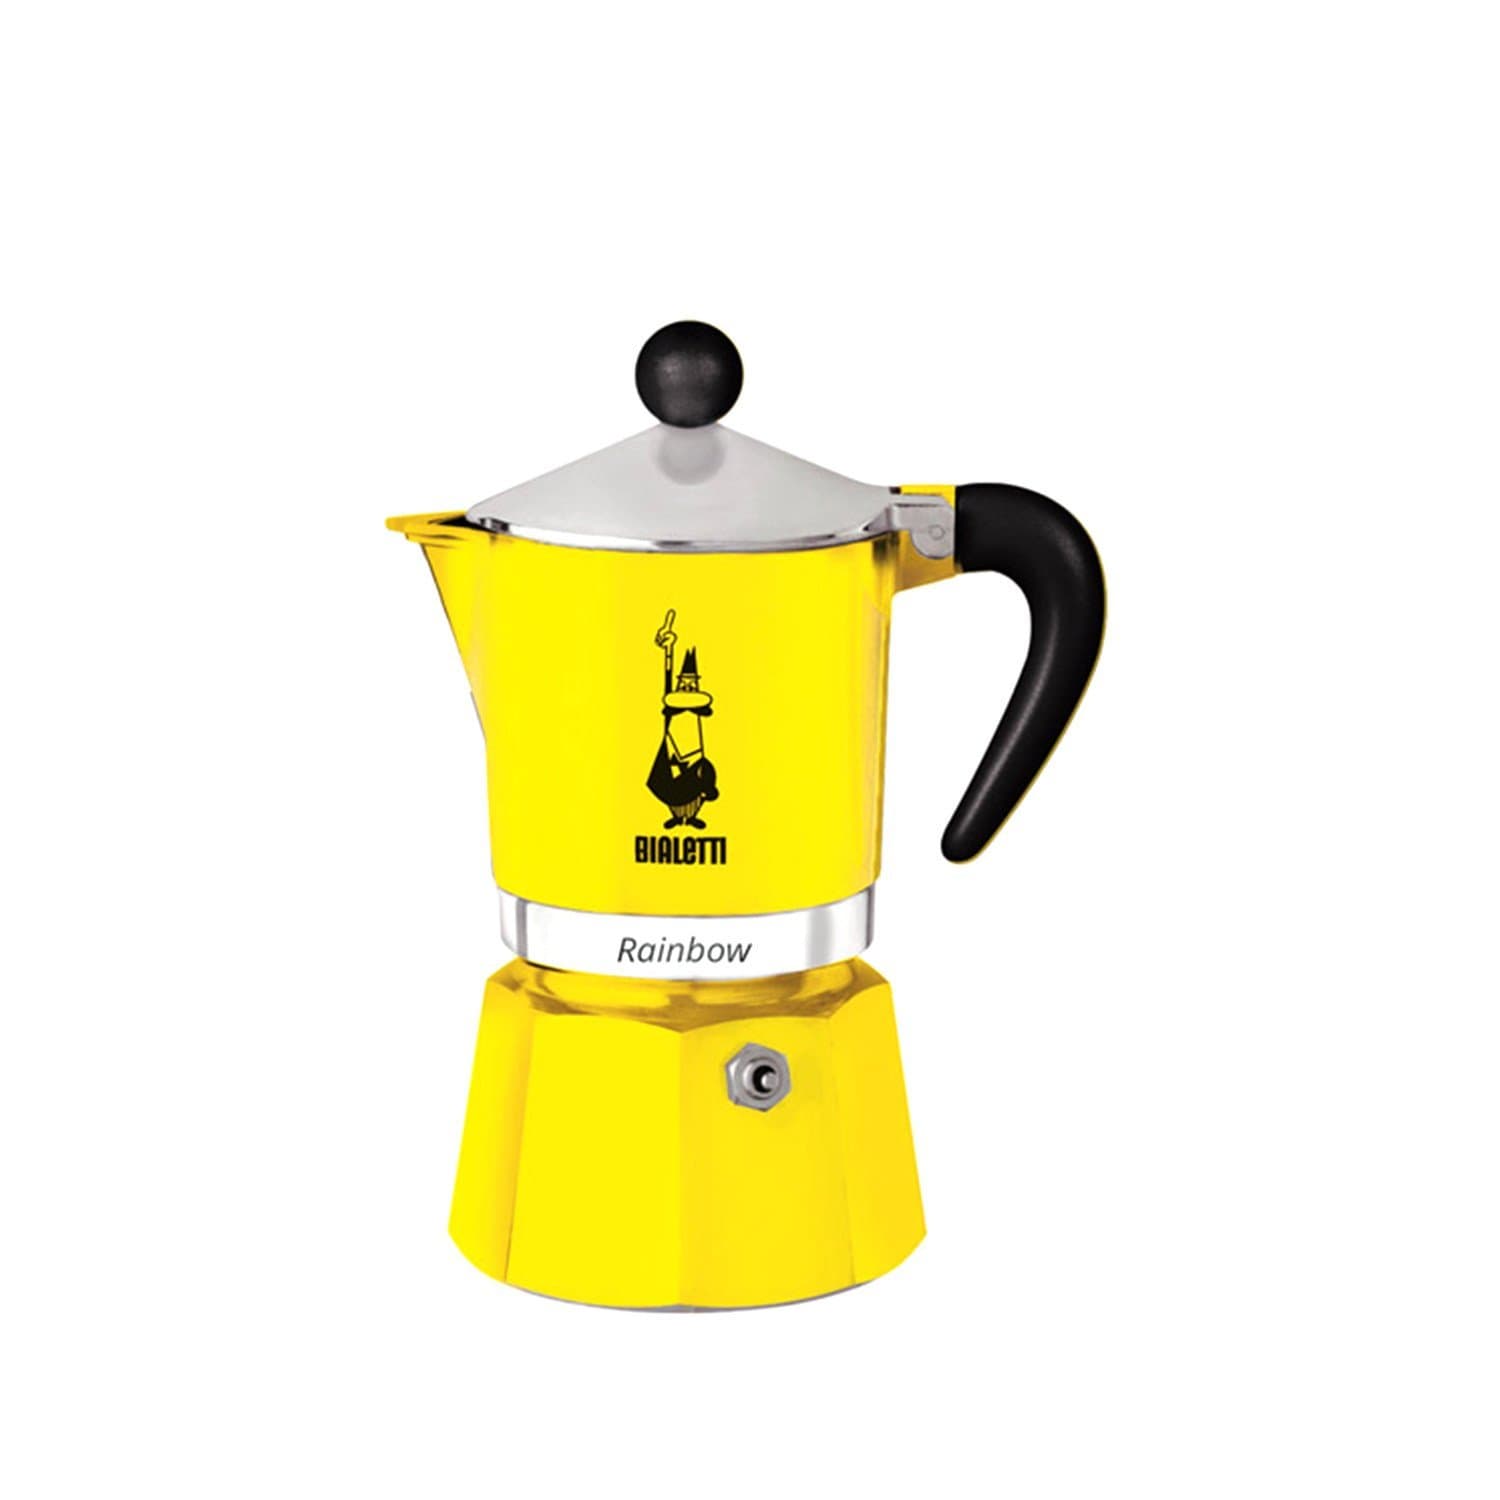 بياليتي ماكينة تحضير القهوة رينبو - أصفر، 6 أكواب - 4983 - جاشنمال هوم